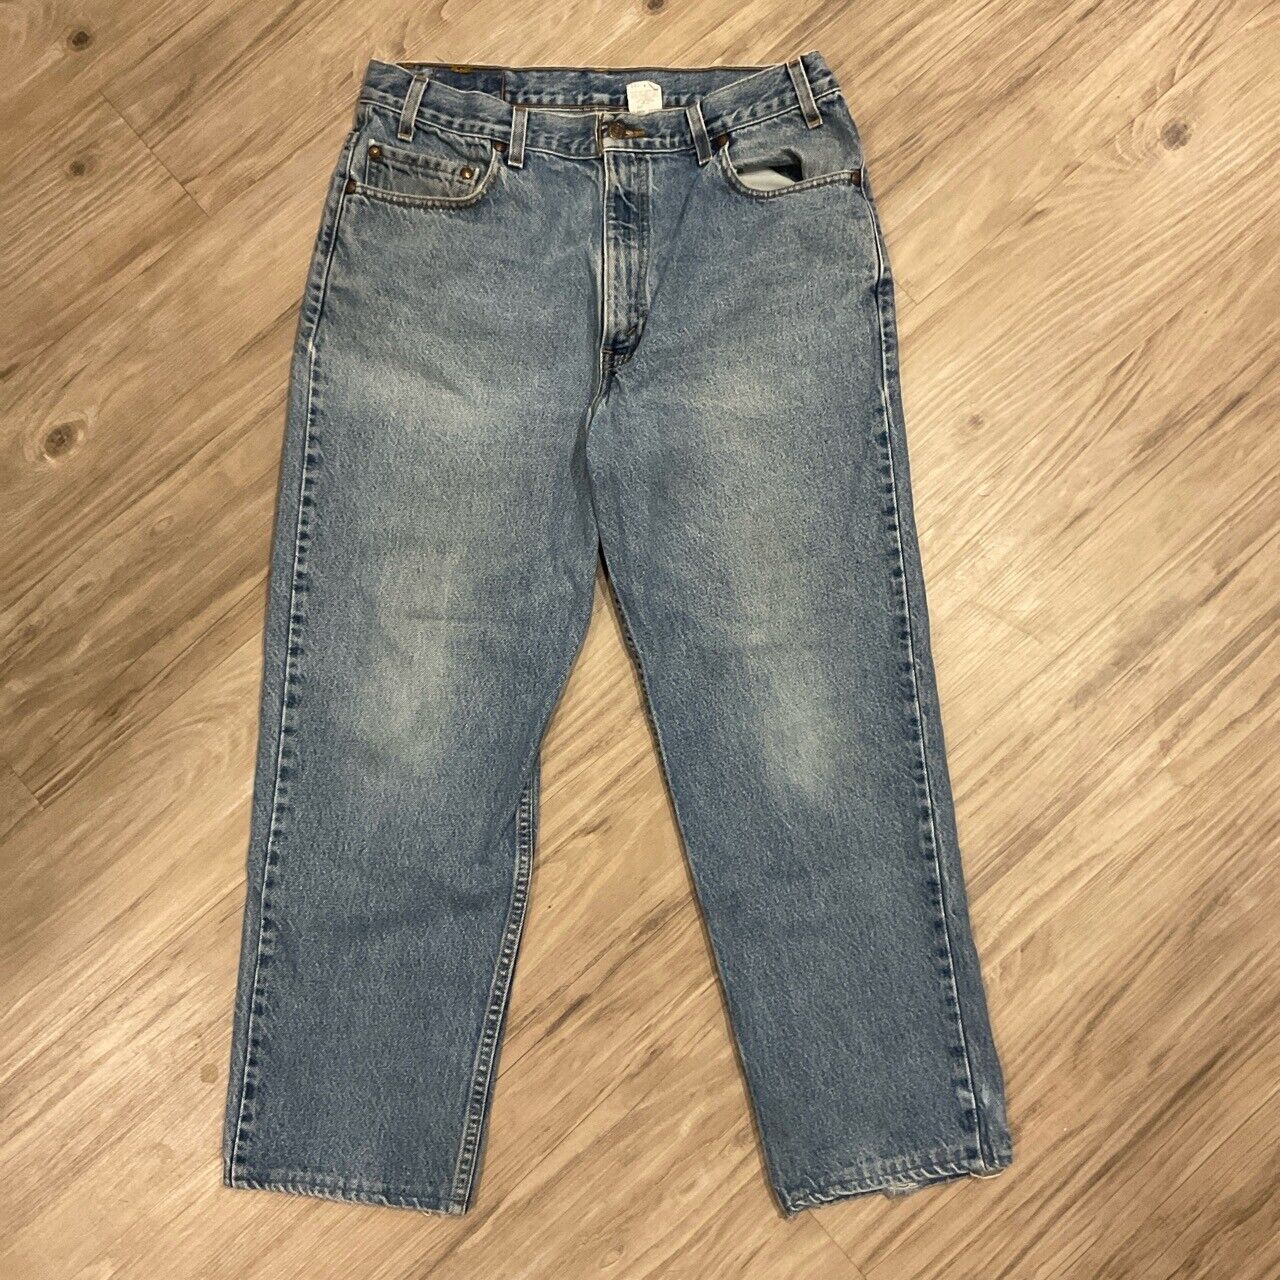 Vintage 1990s Levi’s 540 Denim Jeans Size 36x30 - image 5